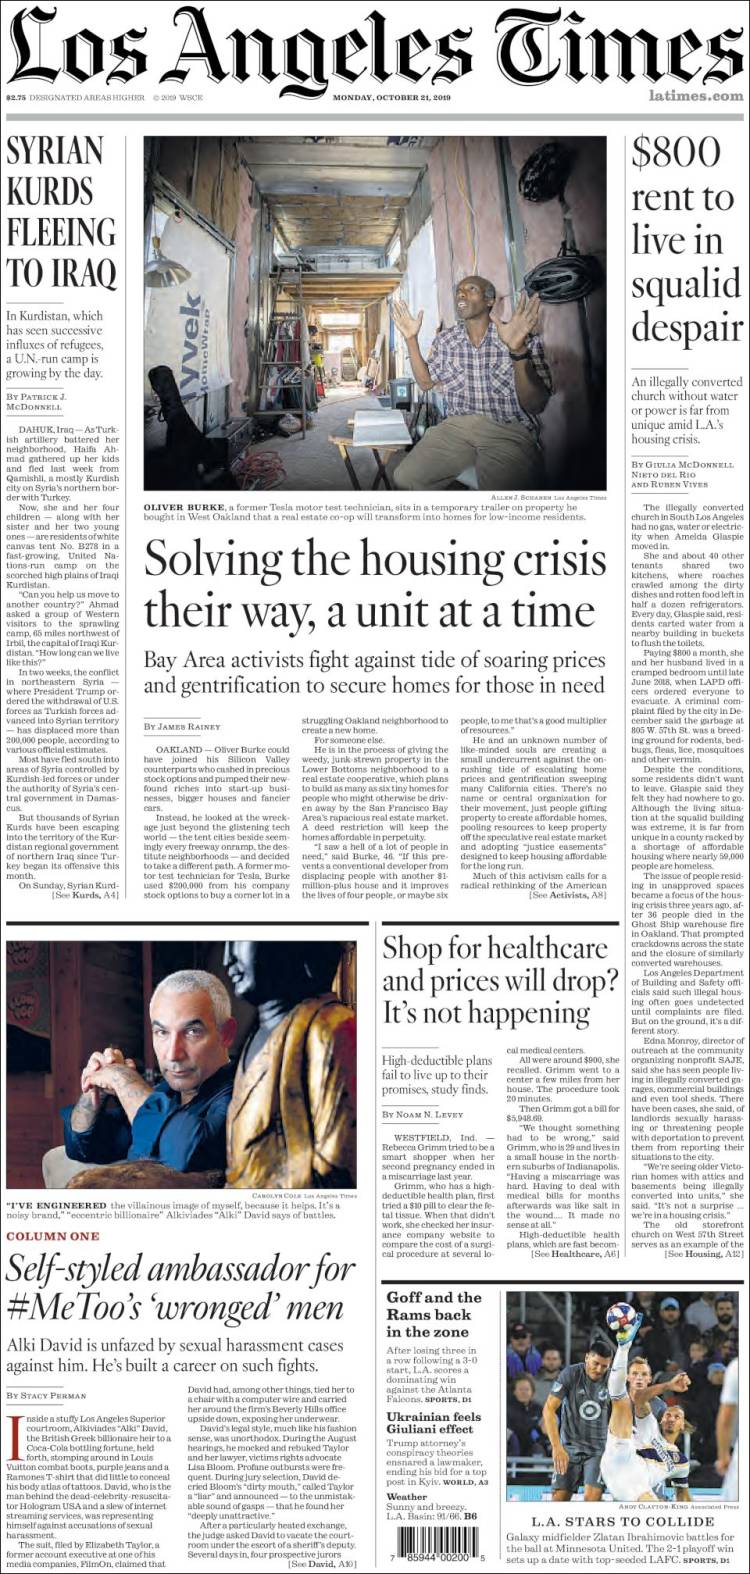 صفحه اول روزنامه لس آنجلس تایمز/کردهای سوریه به سوی عراق فرار می کنند